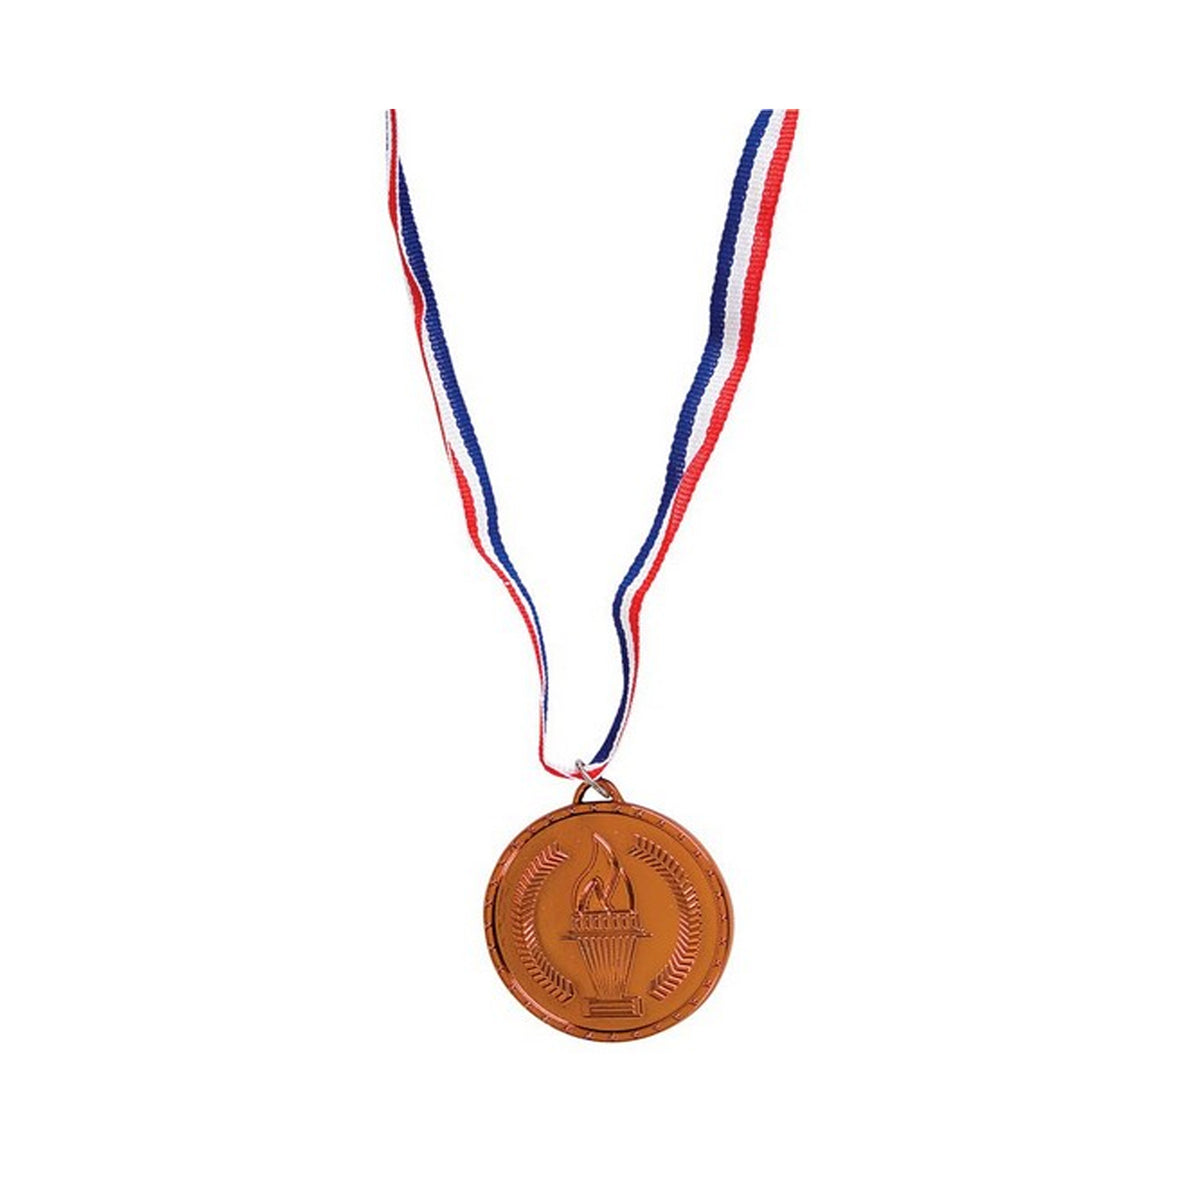 Creative Bronze Prize Award Medal In Bulk